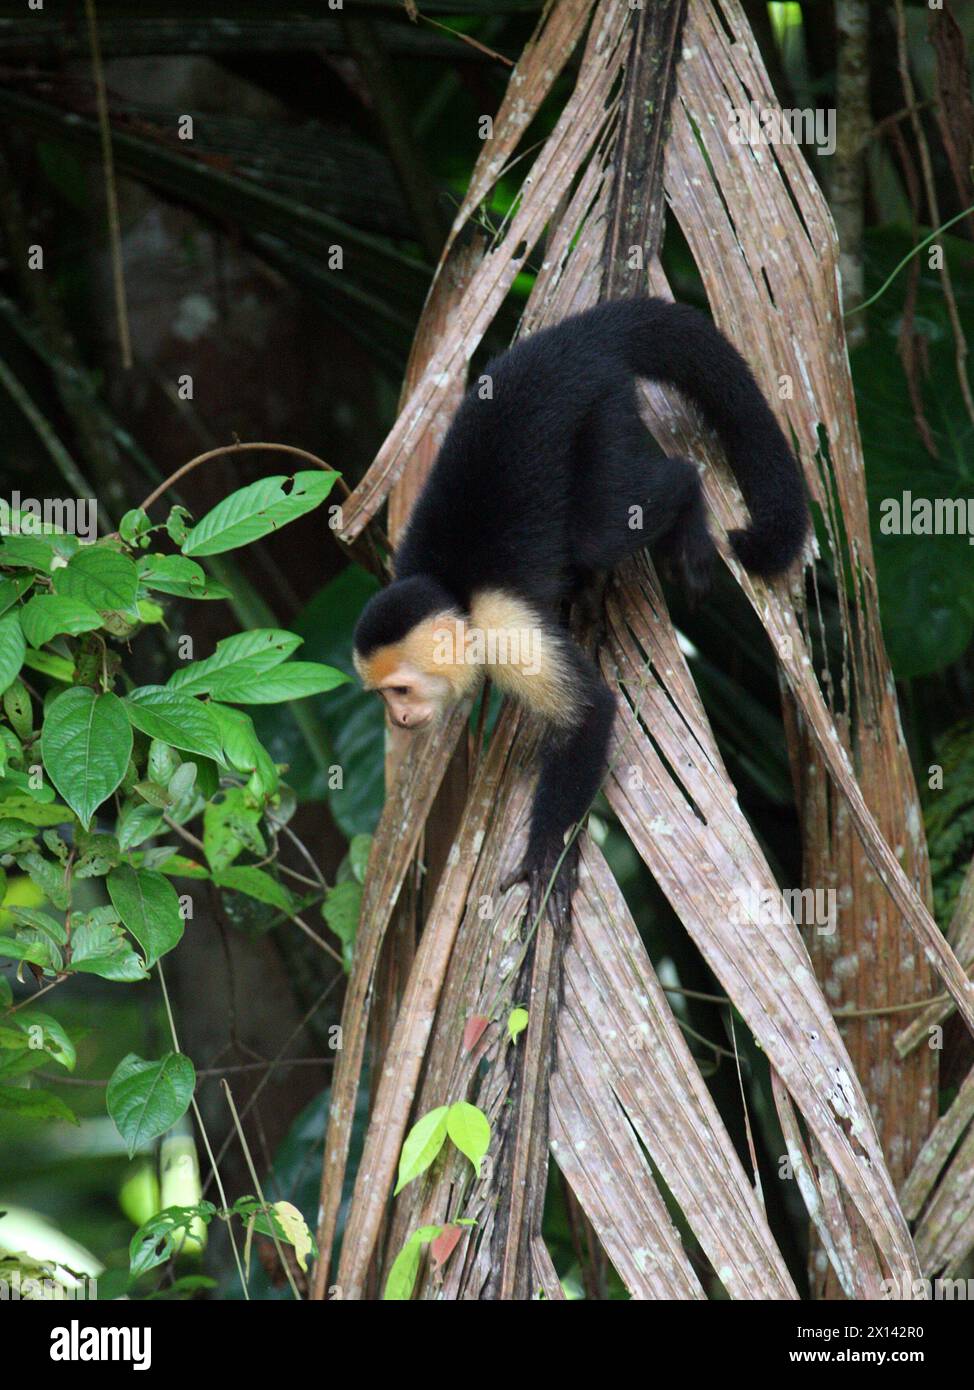 Scimmia cappuccina dalla faccia bianca colombiana, Cebus capucinus, Cebidae, Simiiformes, Haplorhini, primati. Parco nazionale di Tortuguero, Costa Rica. Foto Stock